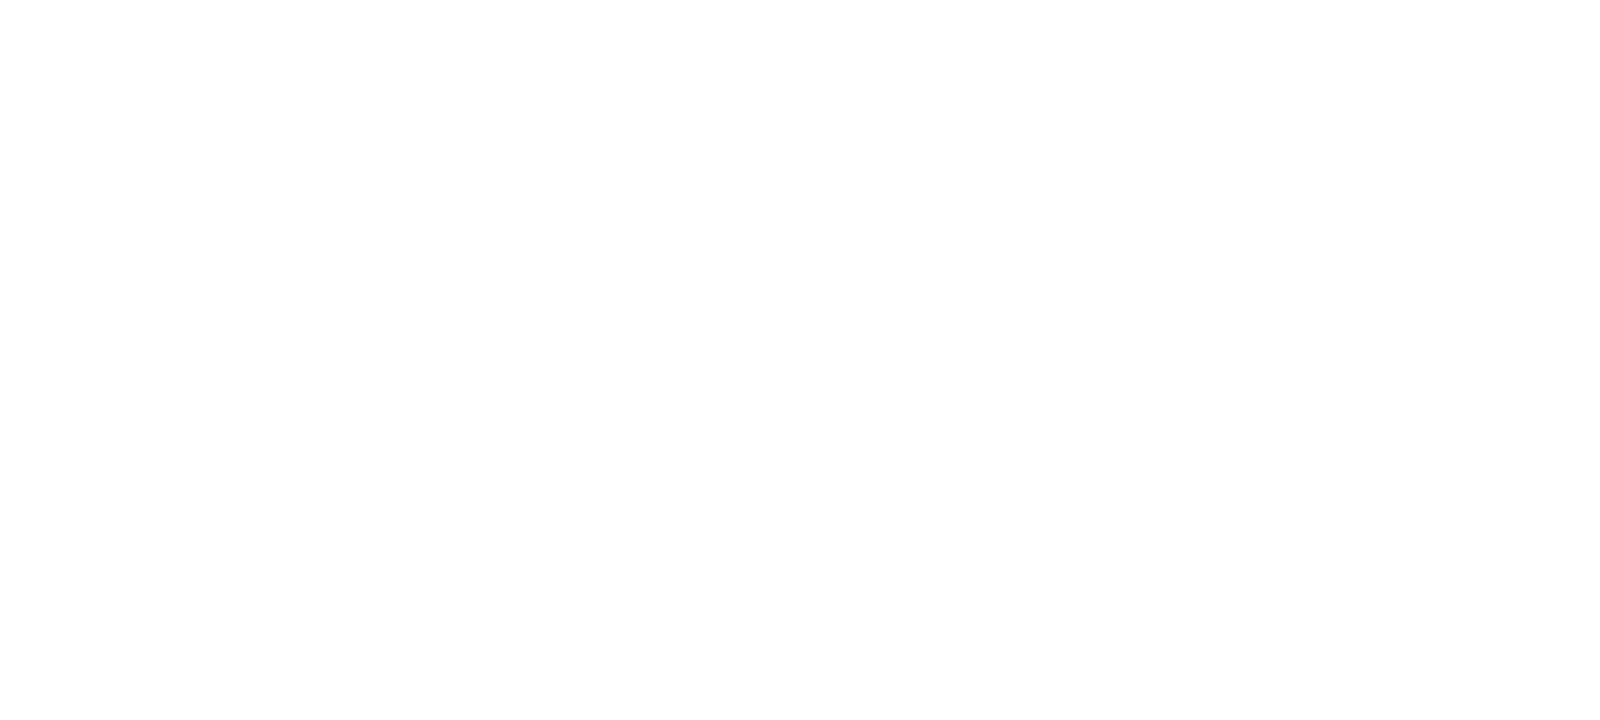 Tzer0, LLC